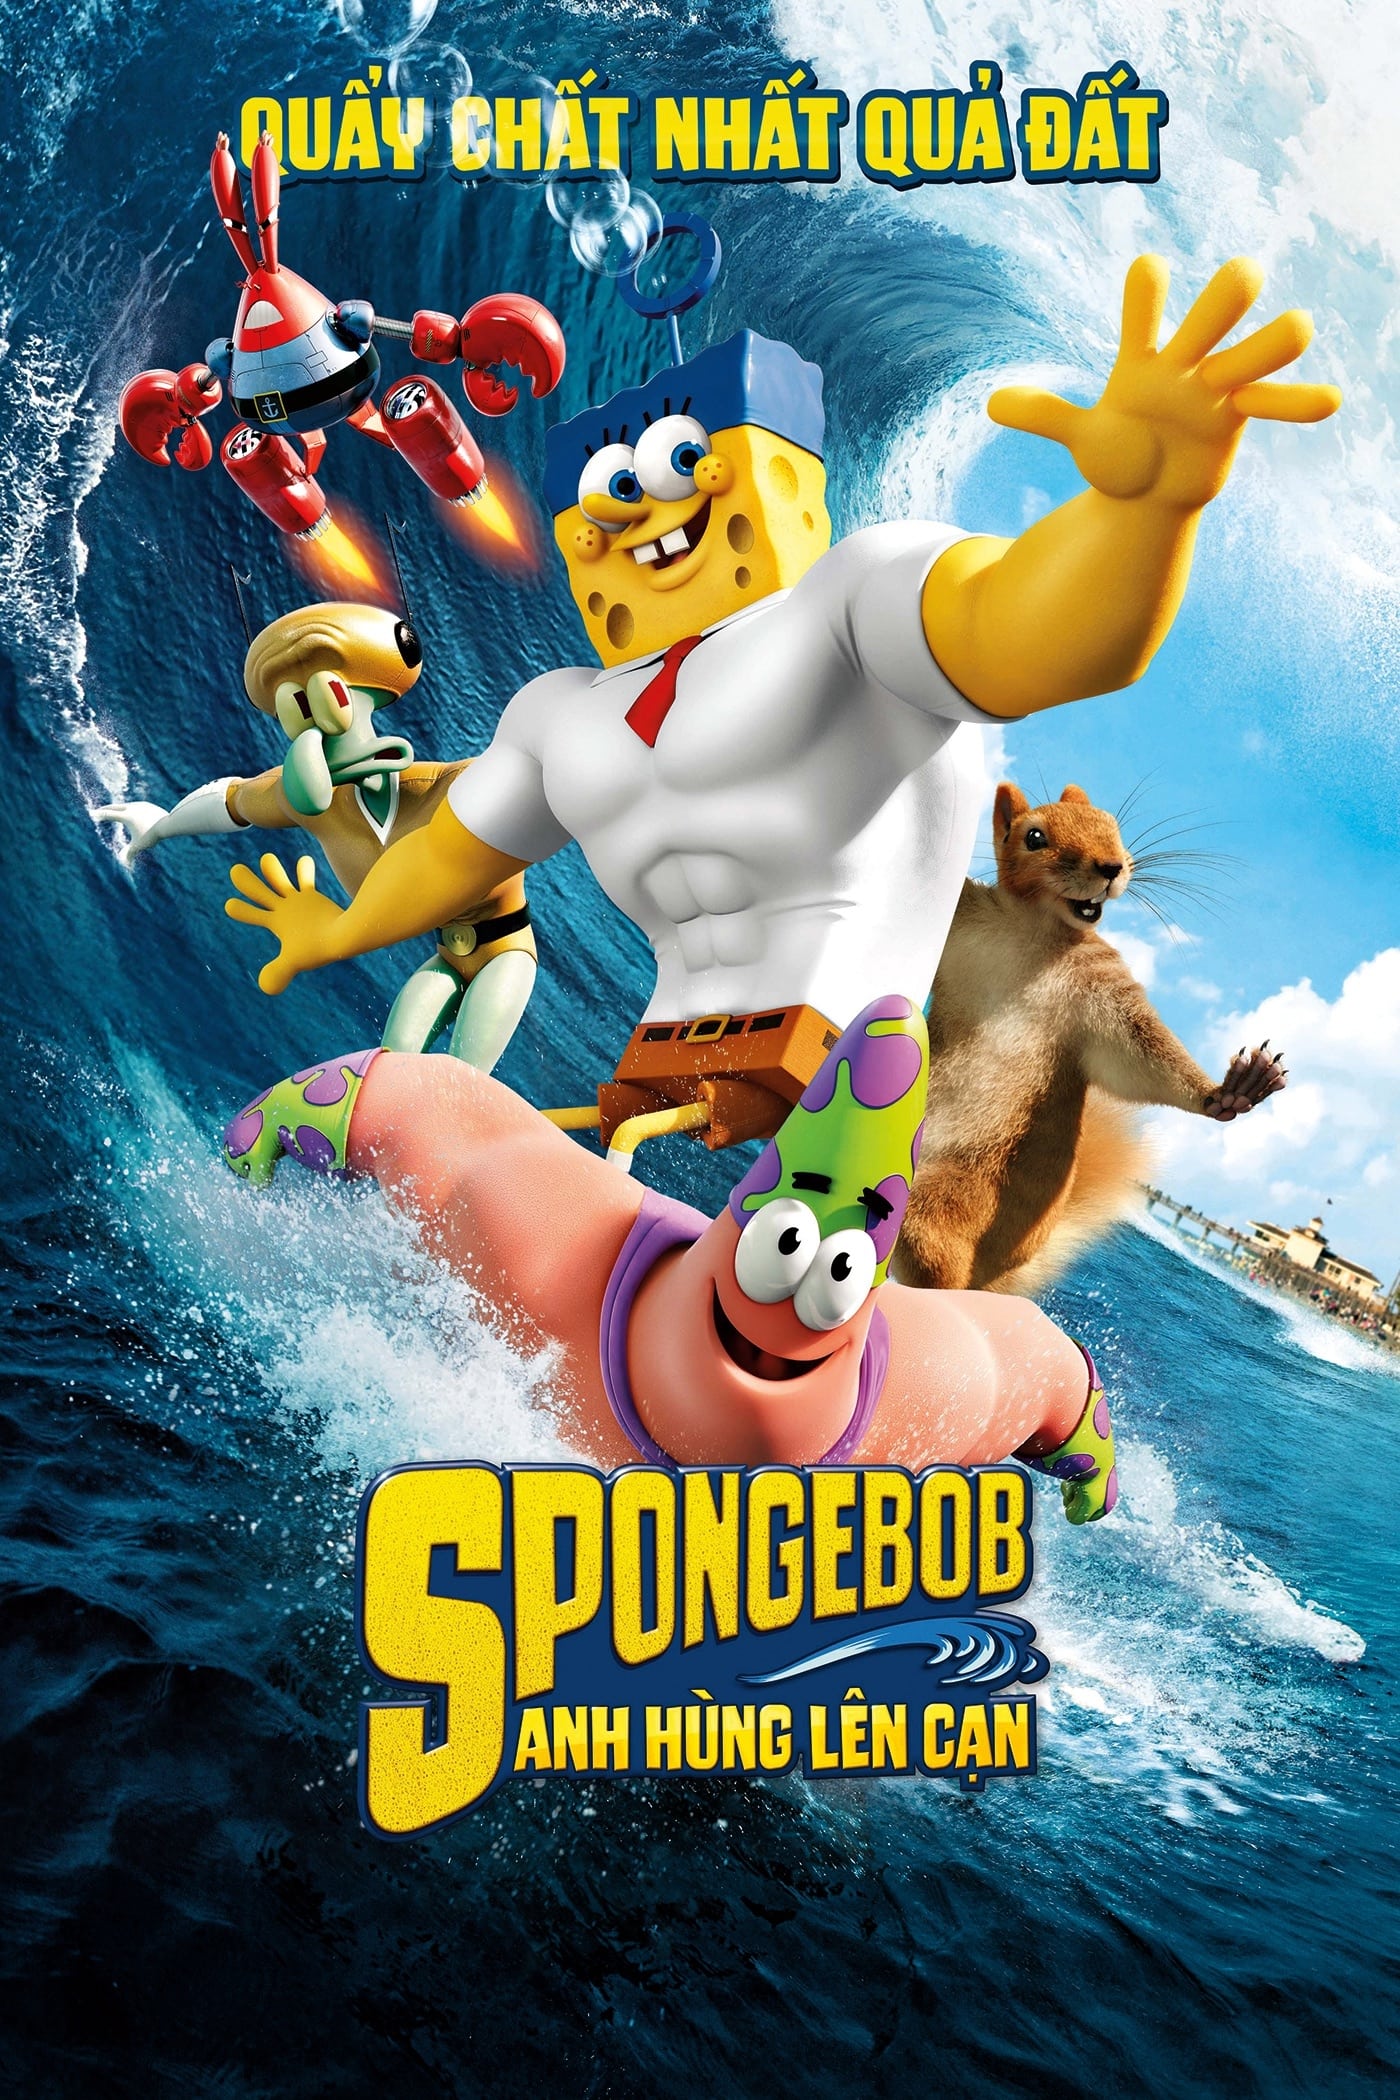 SpongeBob: Anh Hùng Lên Cạn